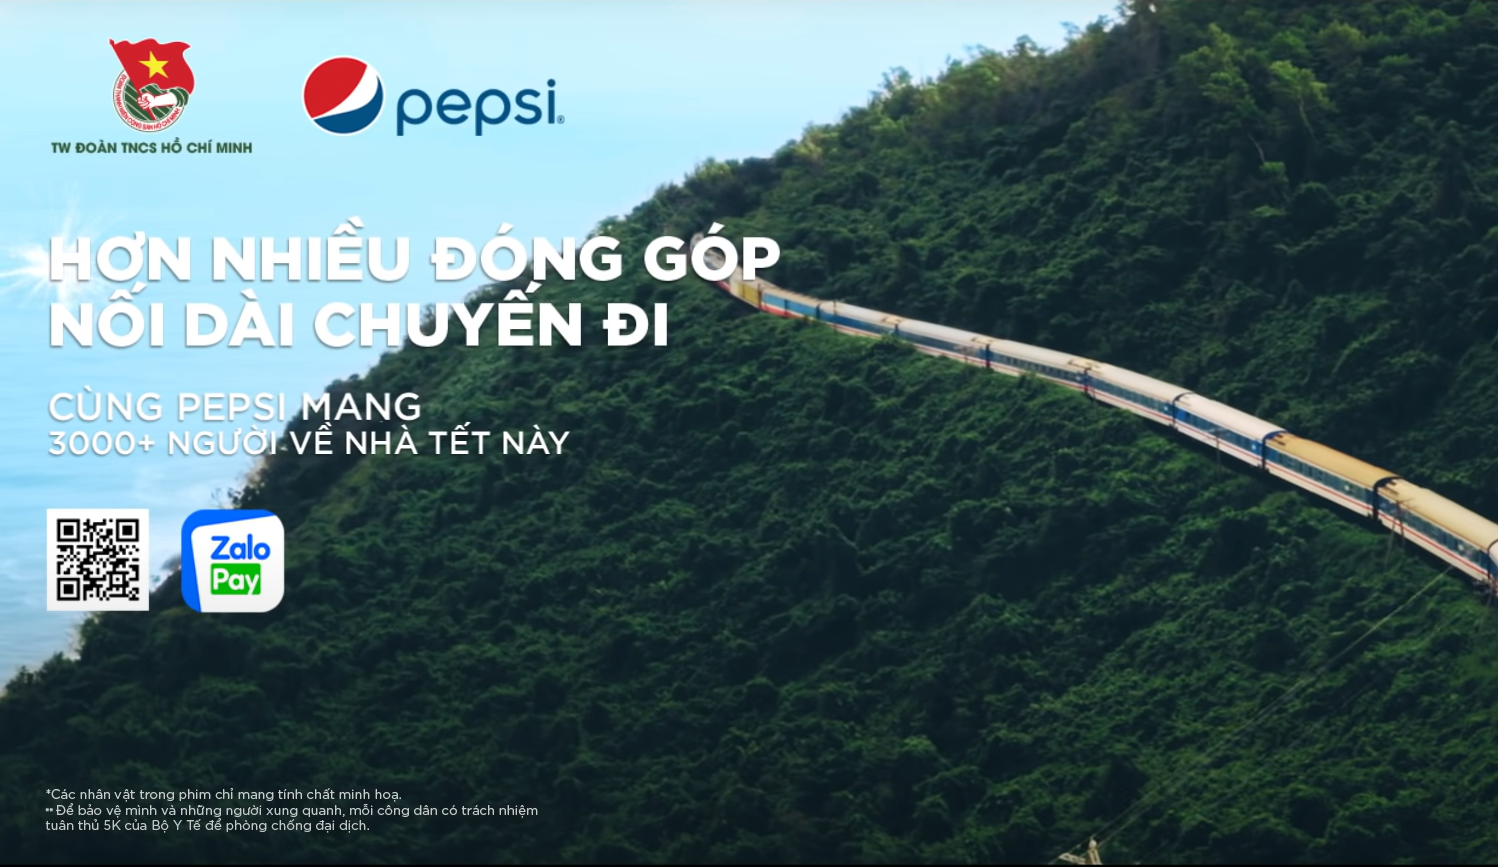 Chuyến tàu dài nhất cùng Pepsi mang Tết về nhà